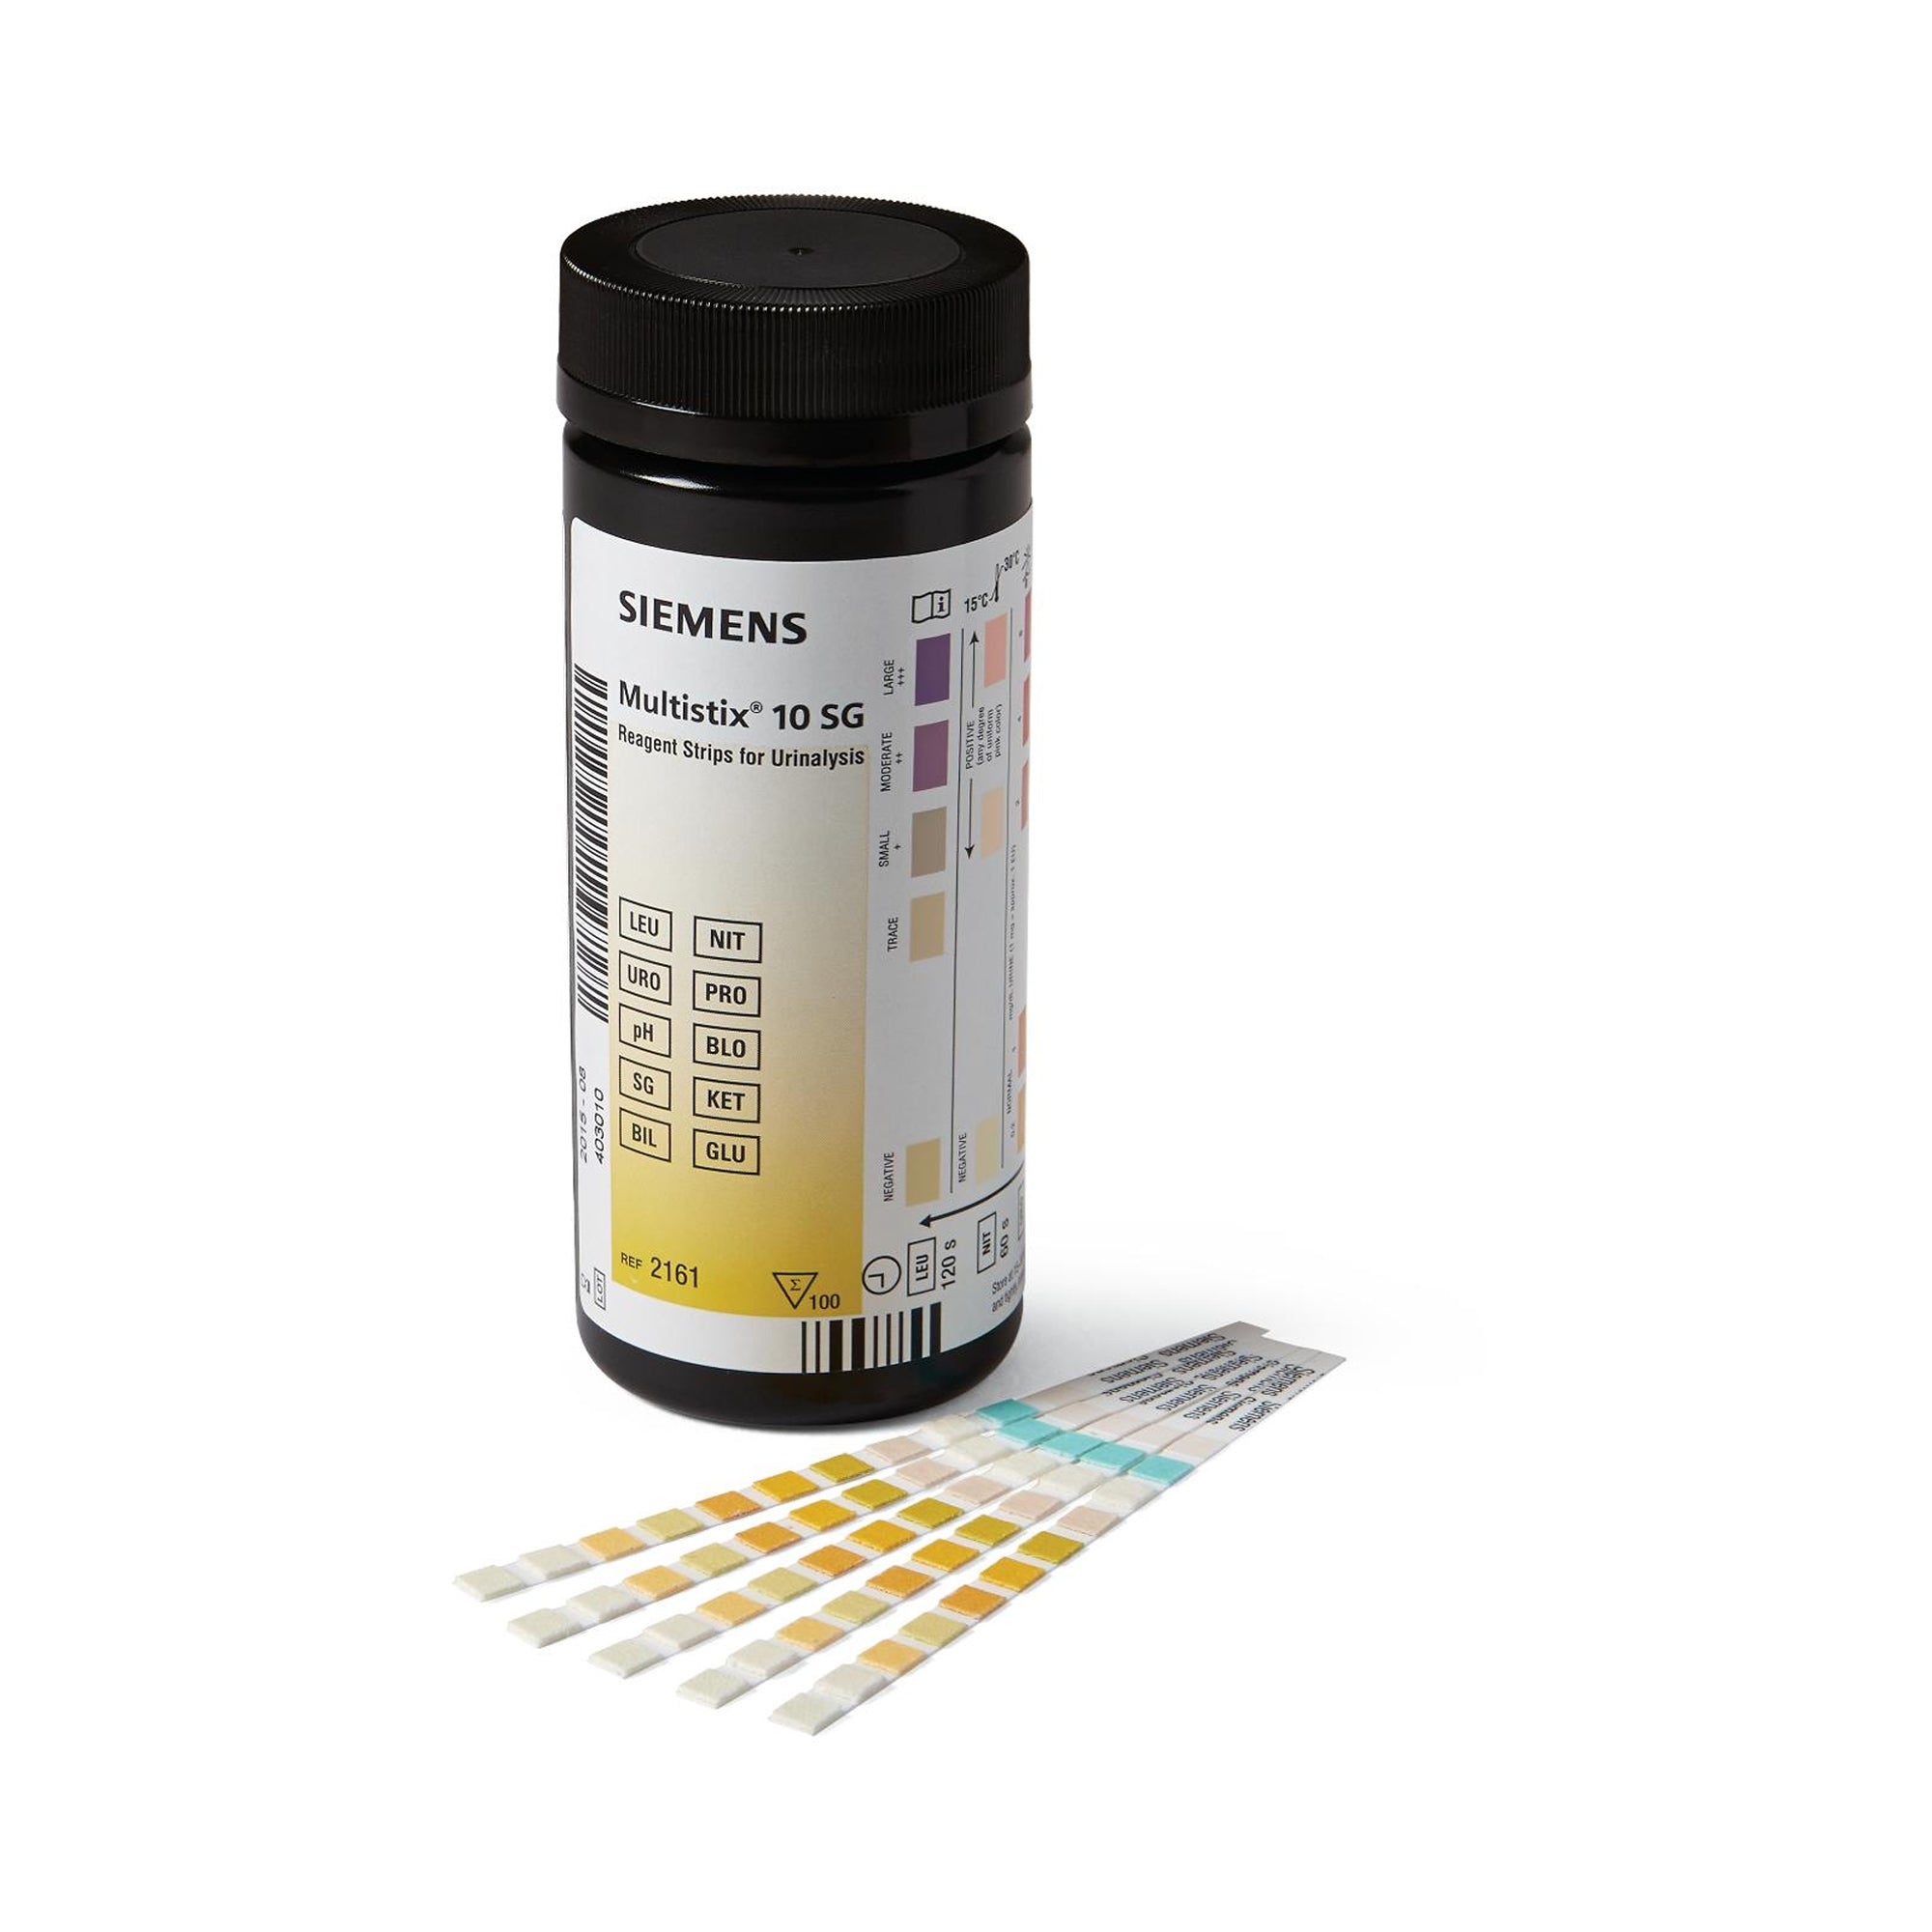 Siemens Multistix® 10 SG Reagent Strips - Detect Bilirubin, Blood, Glucose, Ketone, Leukocytes, Nitrite, pH, Protein, Specific Gravity, Urobilinogen (100 Strips/Bottle)